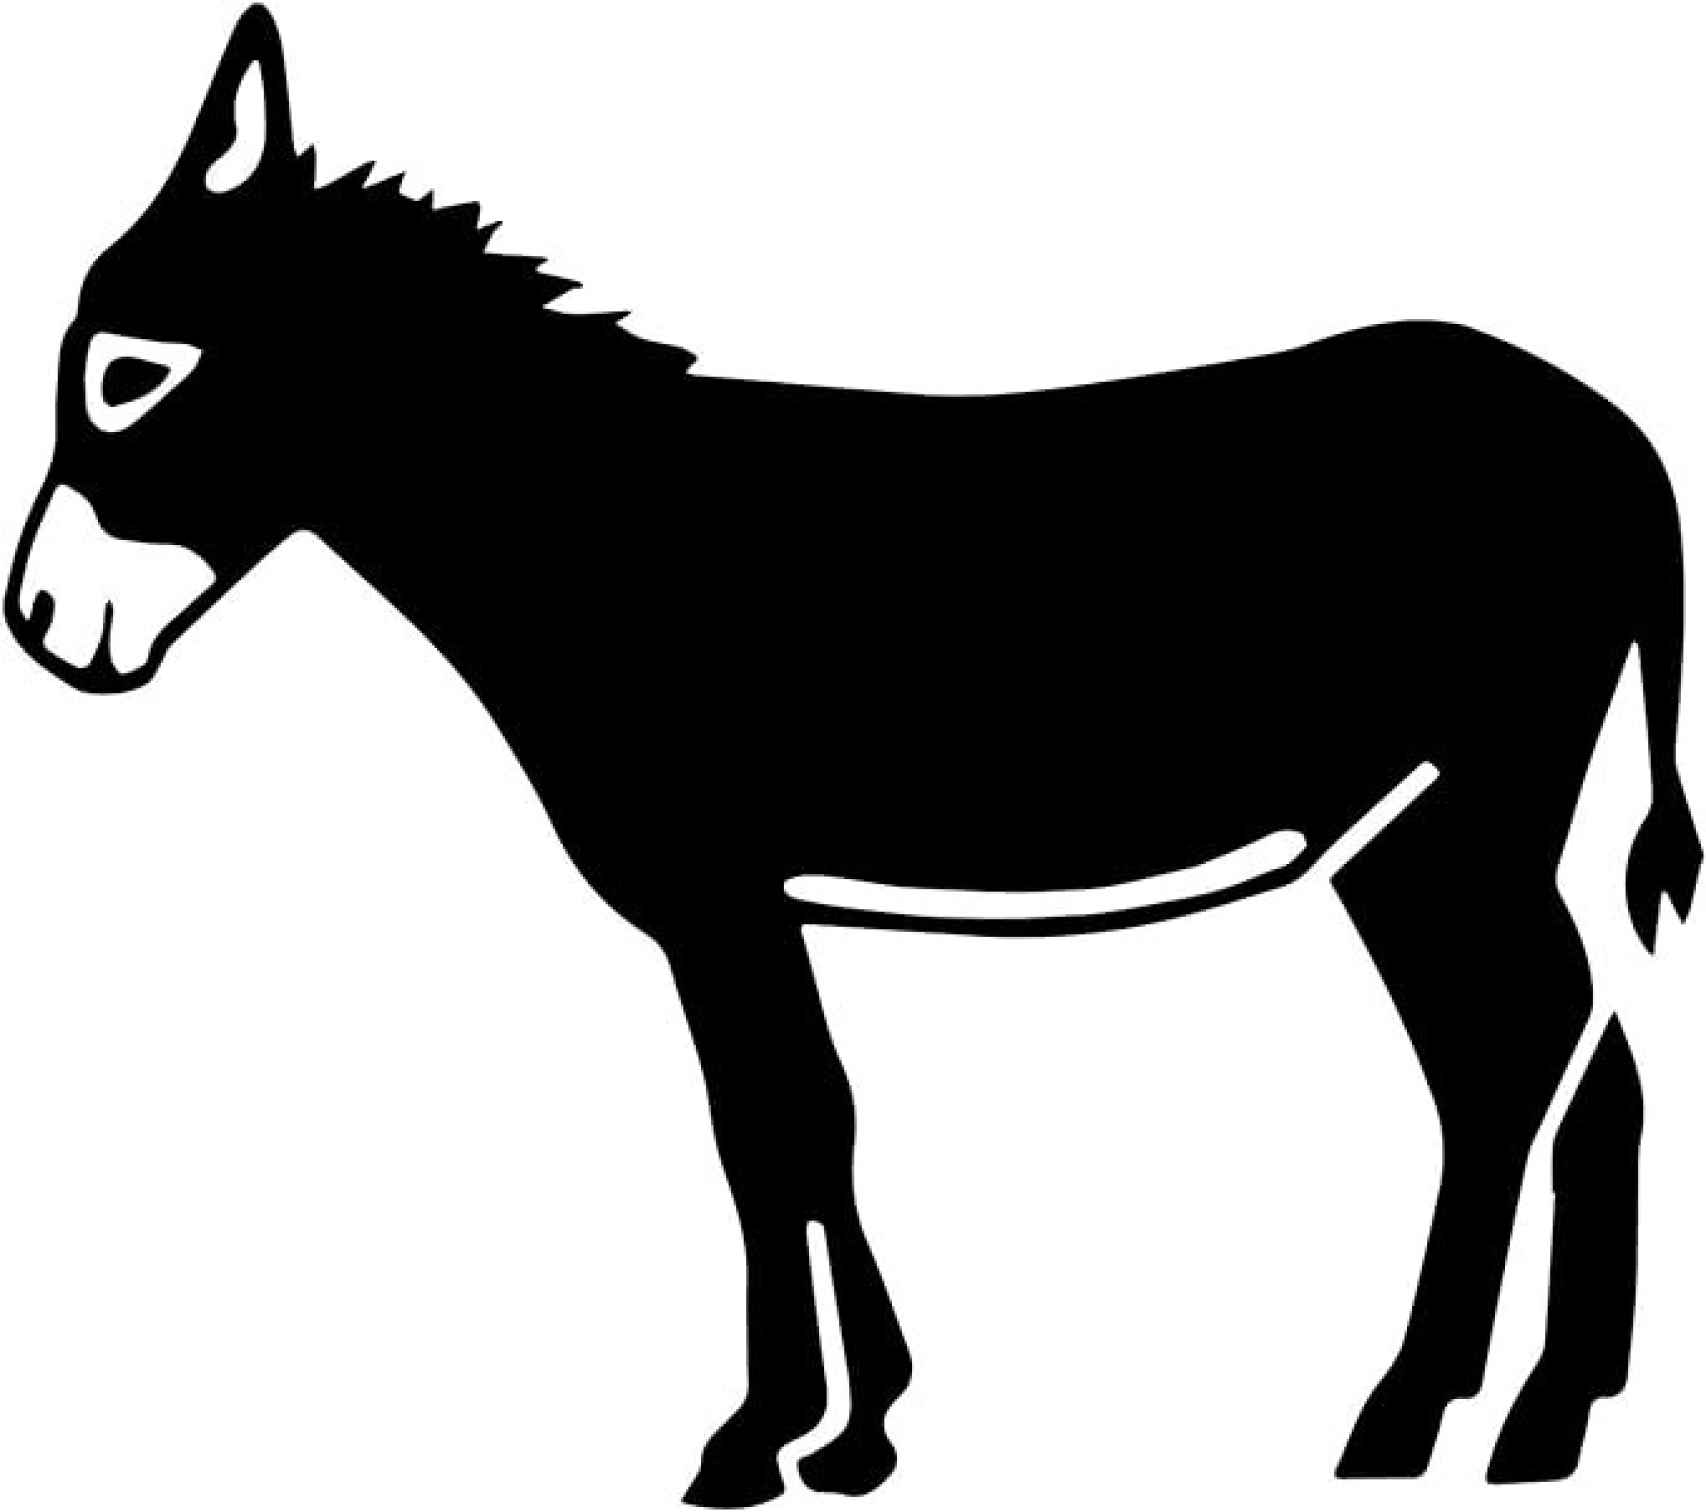 Emblema del burro catalán